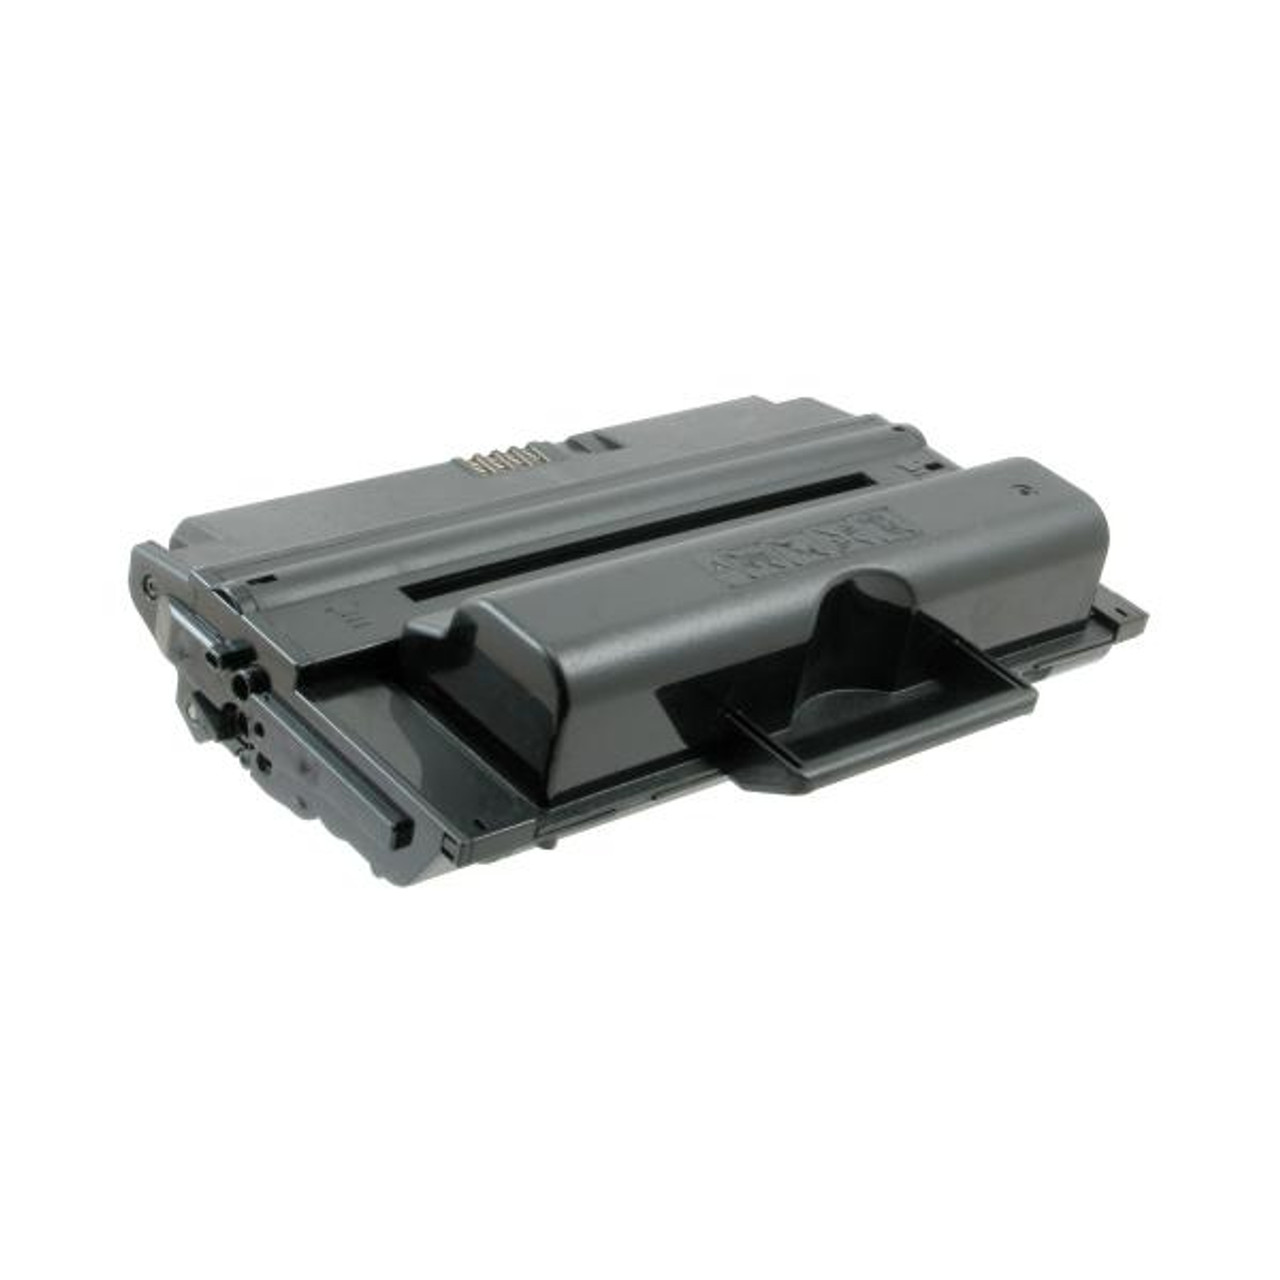 Toner Cartridge for Dell 2355-1